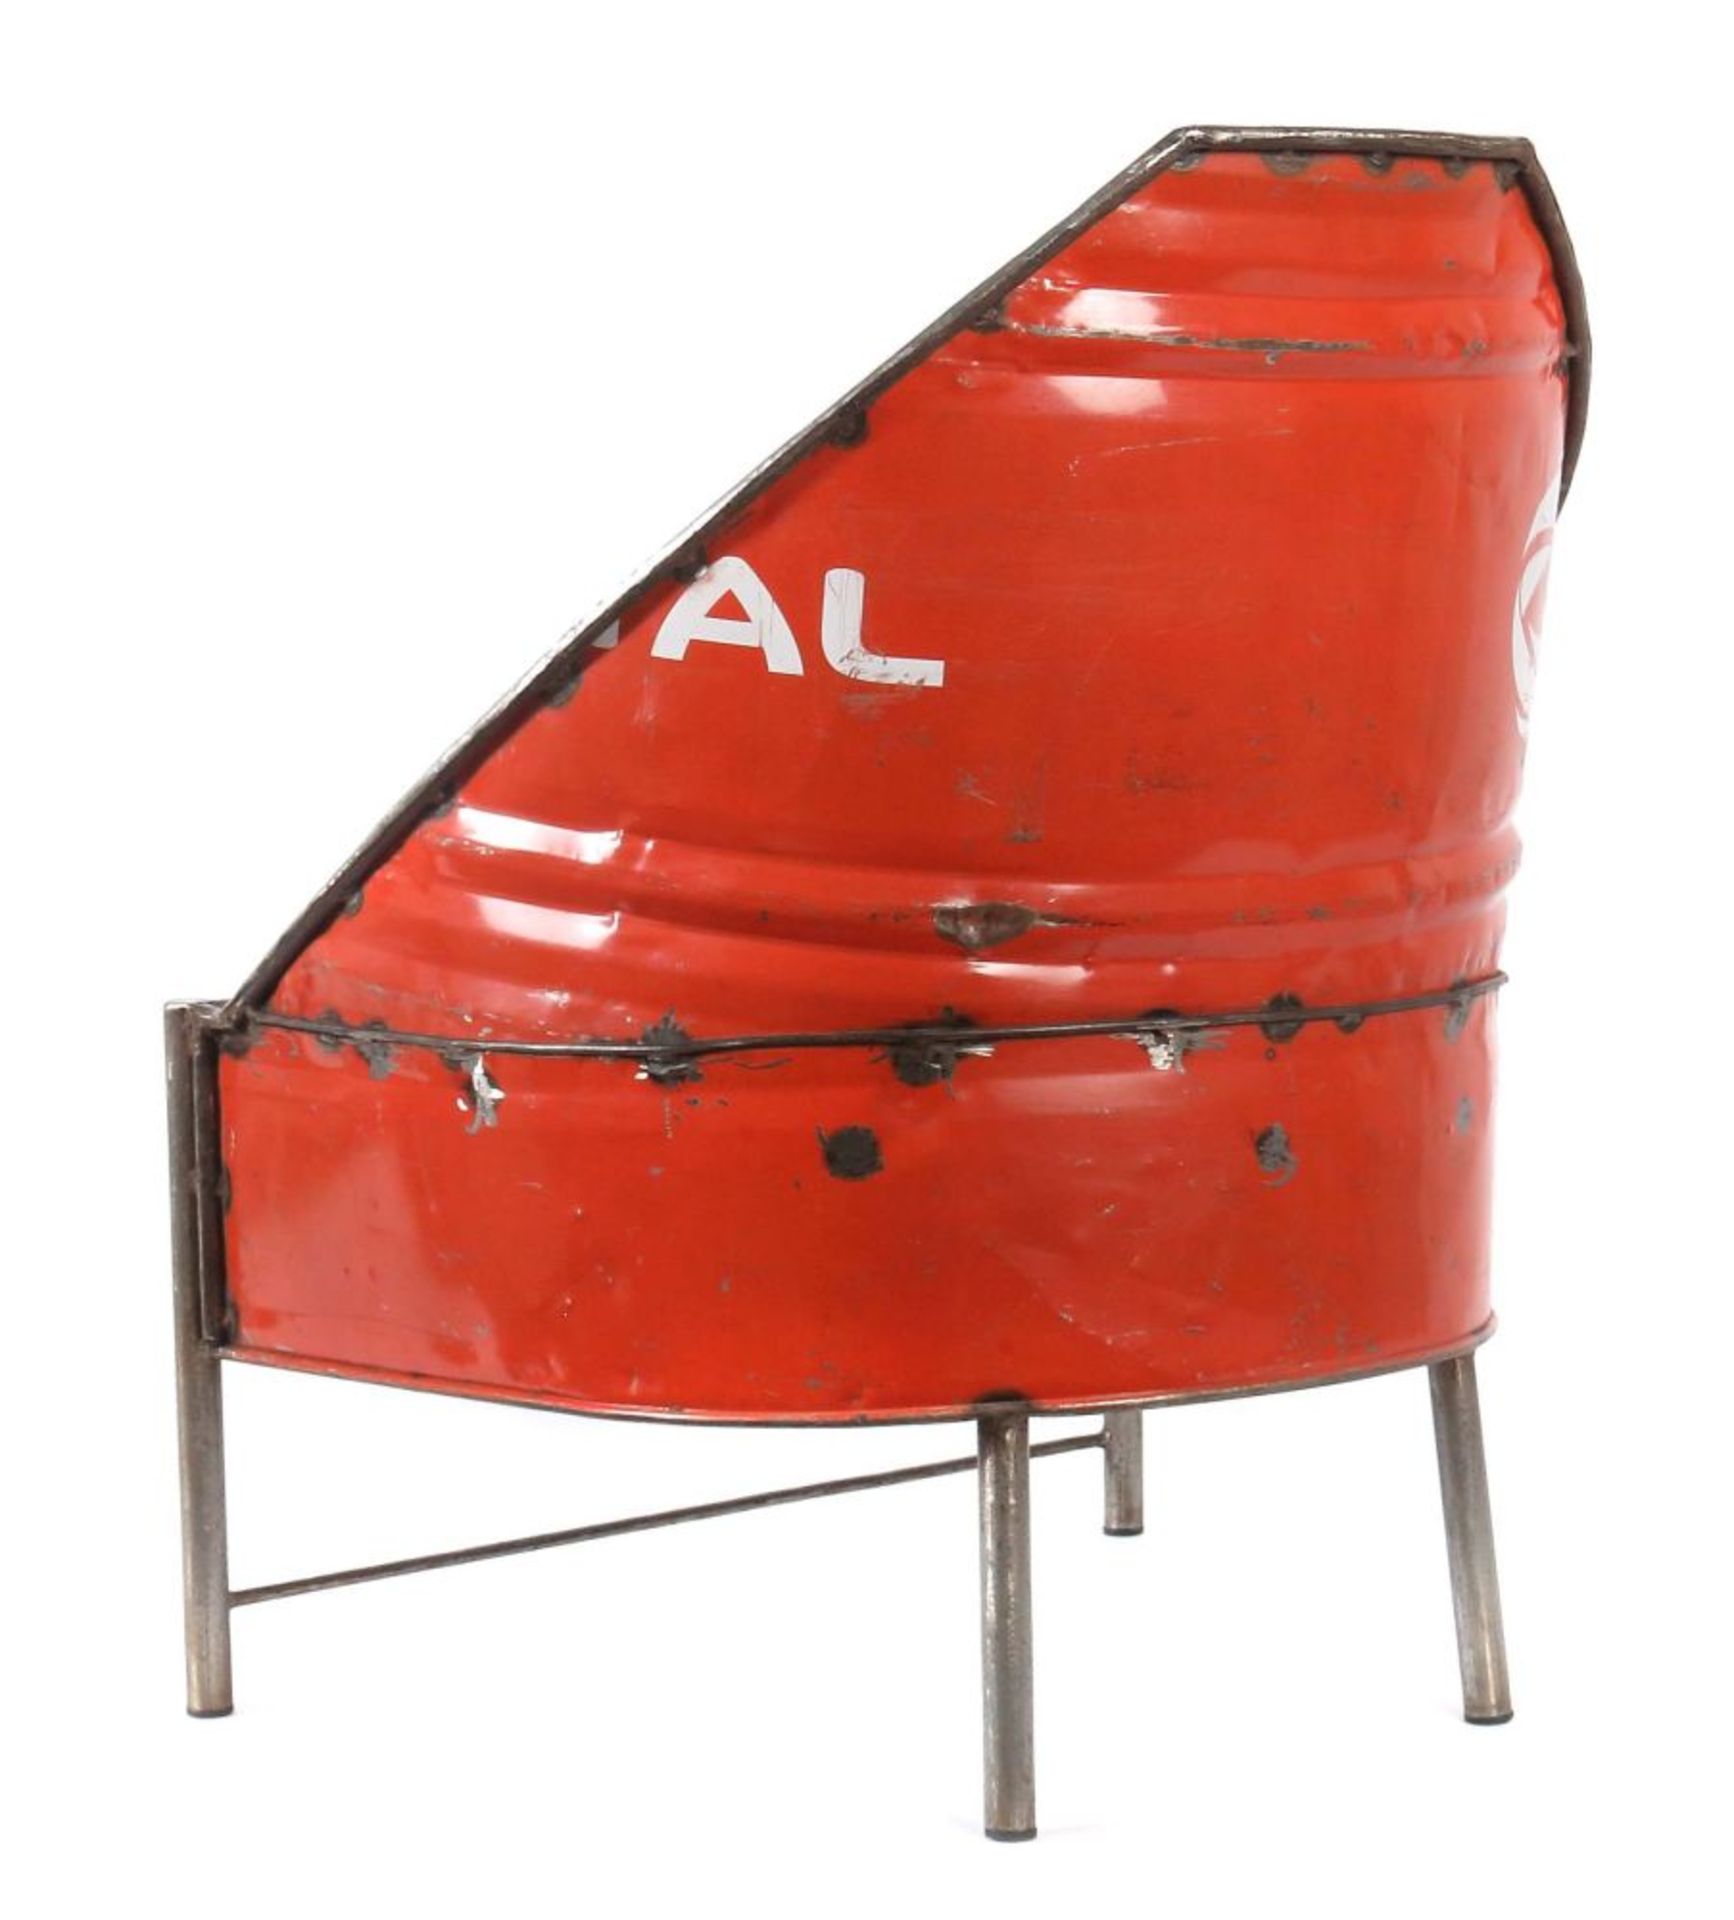 Sitzmöbel aus einem Ölfass gefertigt, - Bild 3 aus 3